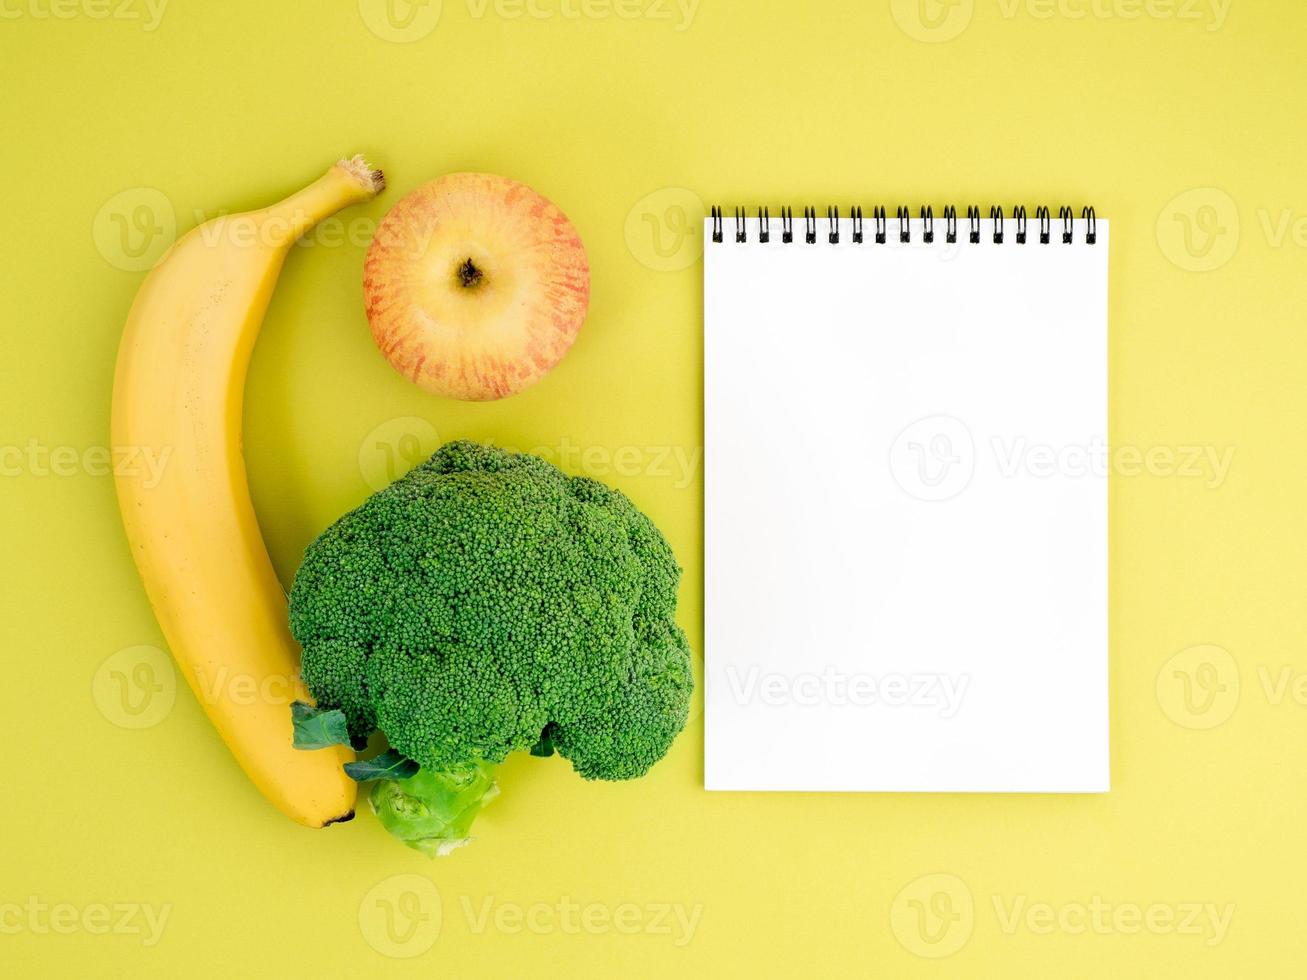 fruits et légumes - pomme, banane et brocoli sur fond jaune vif. cahier pour enregistrer une bonne nutrition, des vitamines, un mode de vie sain. photo